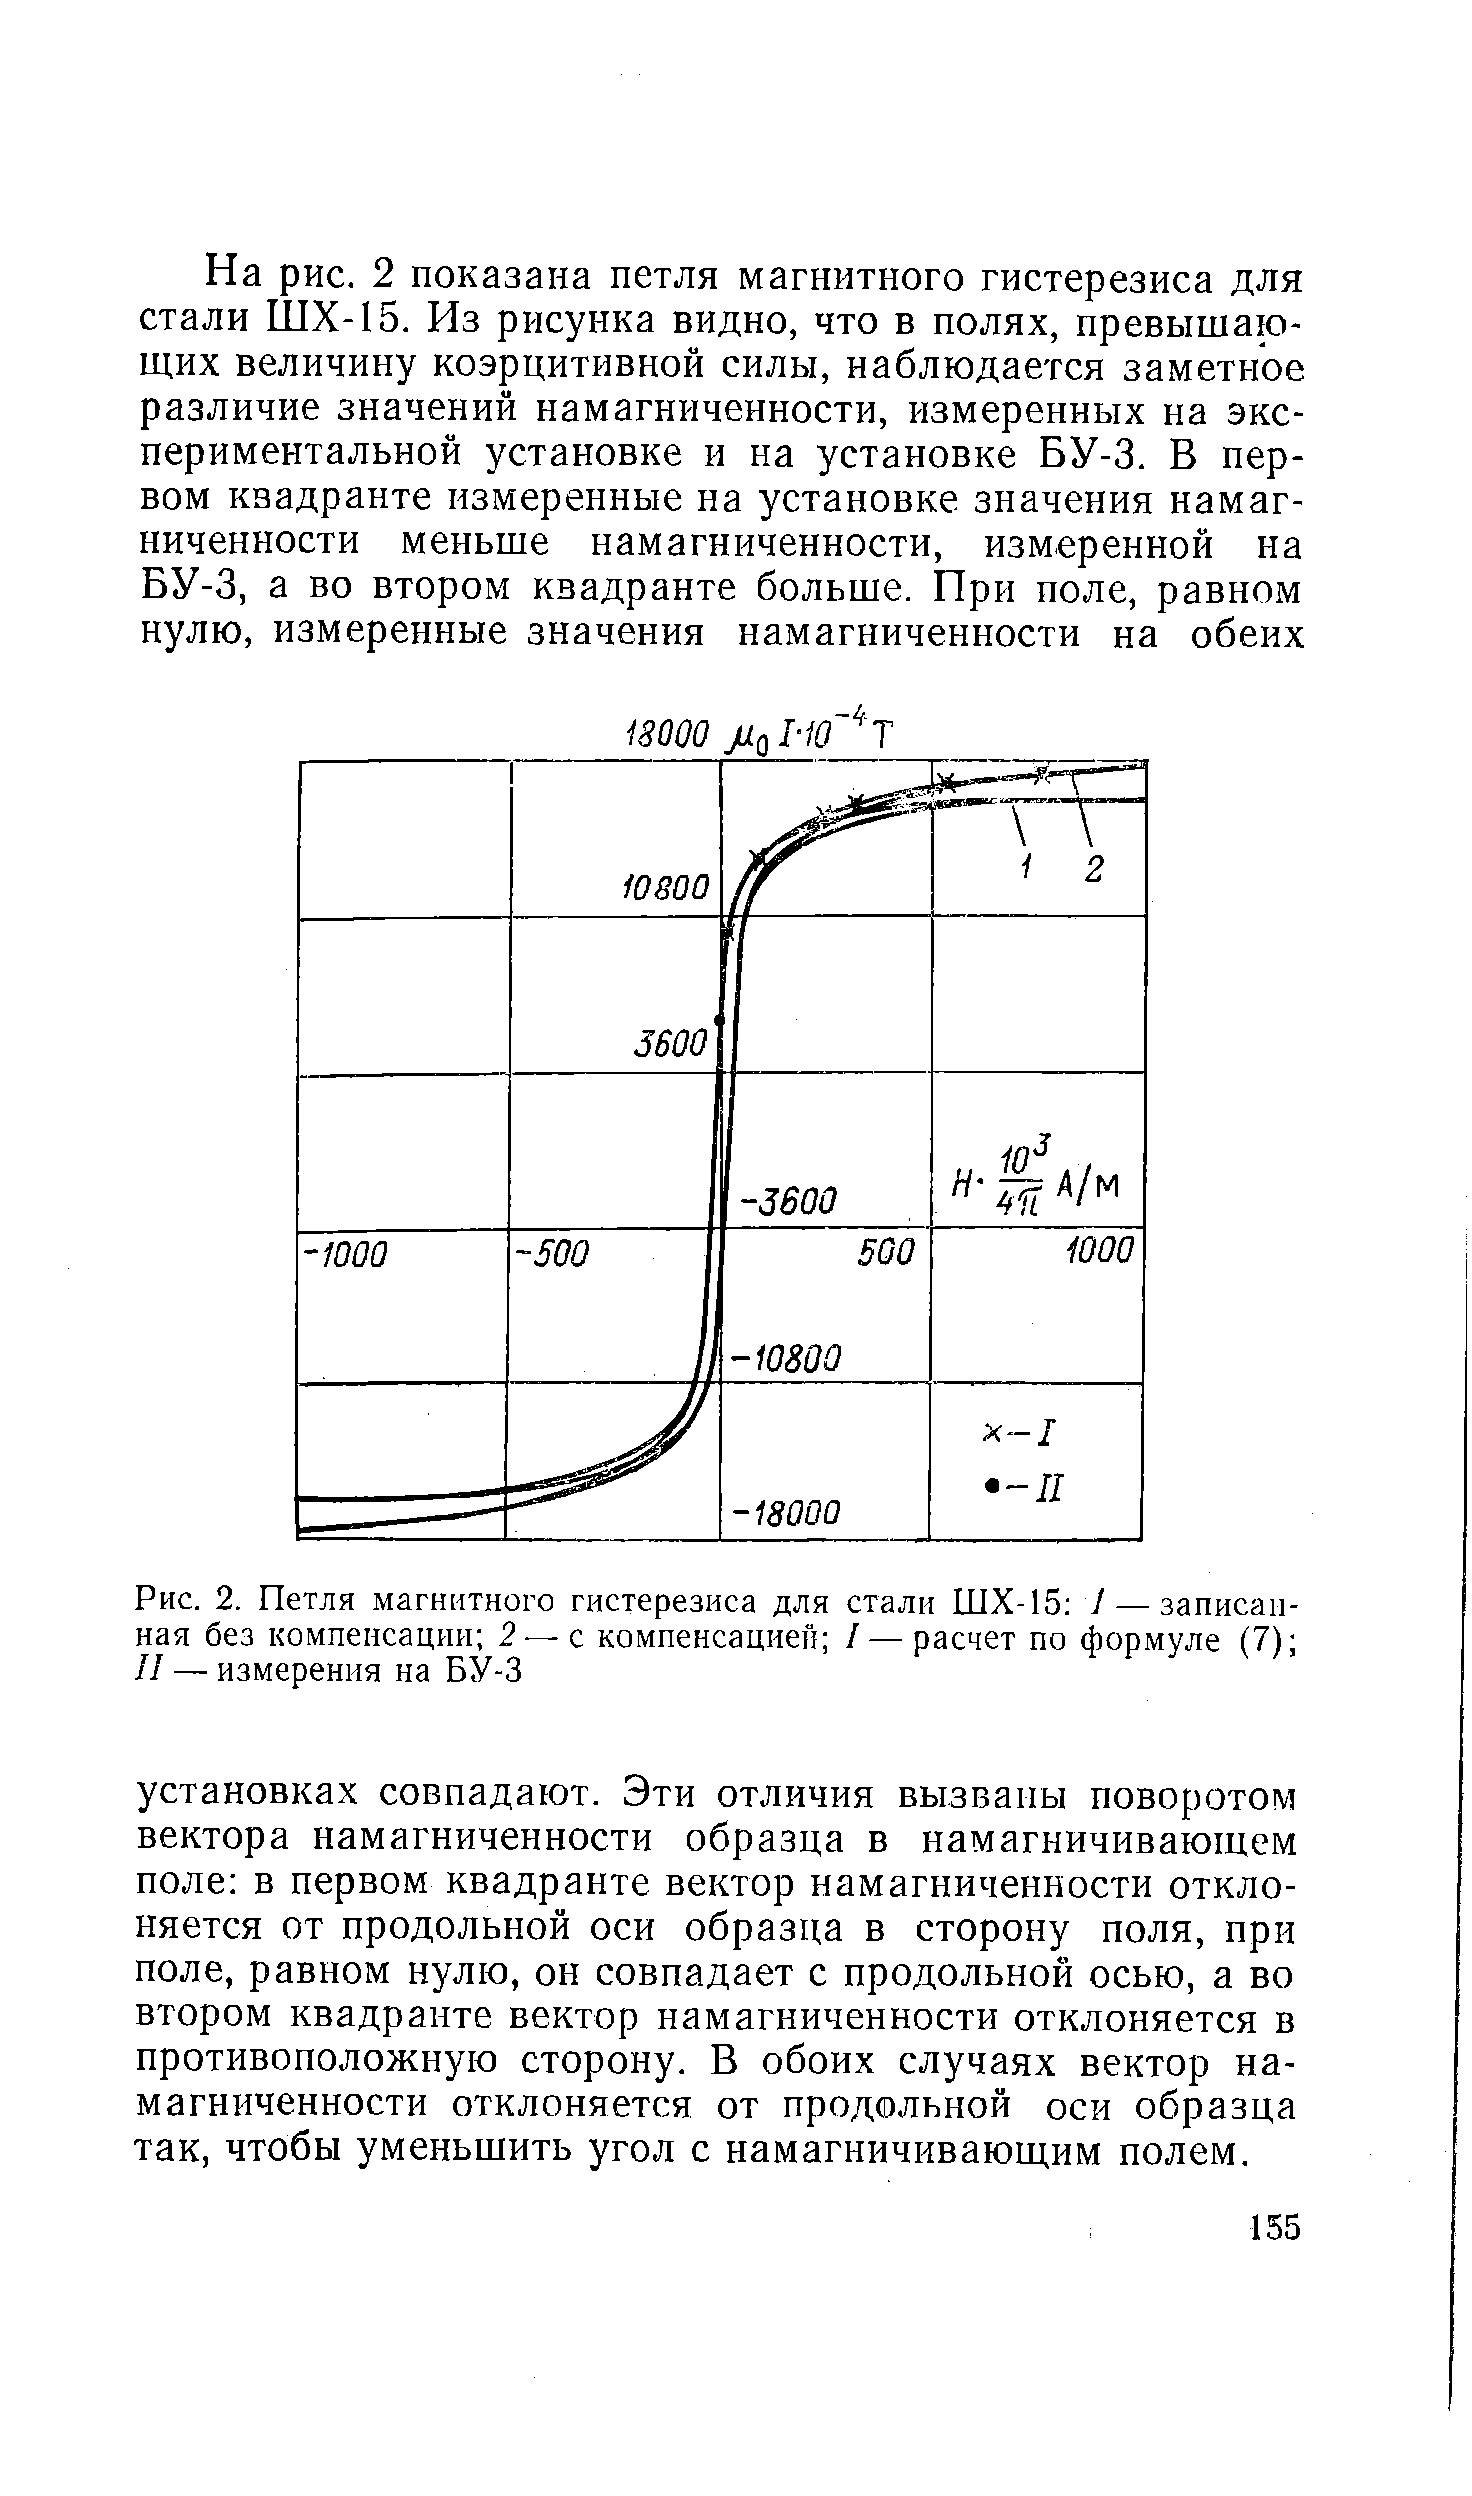 Рис. 2. <a href="/info/335913">Петля магнитного гистерезиса</a> для стали ШХ-15 I — записанная без компенсации 2с компенсацией / — расчет по формуле (7) II — измерения на БУ-3
